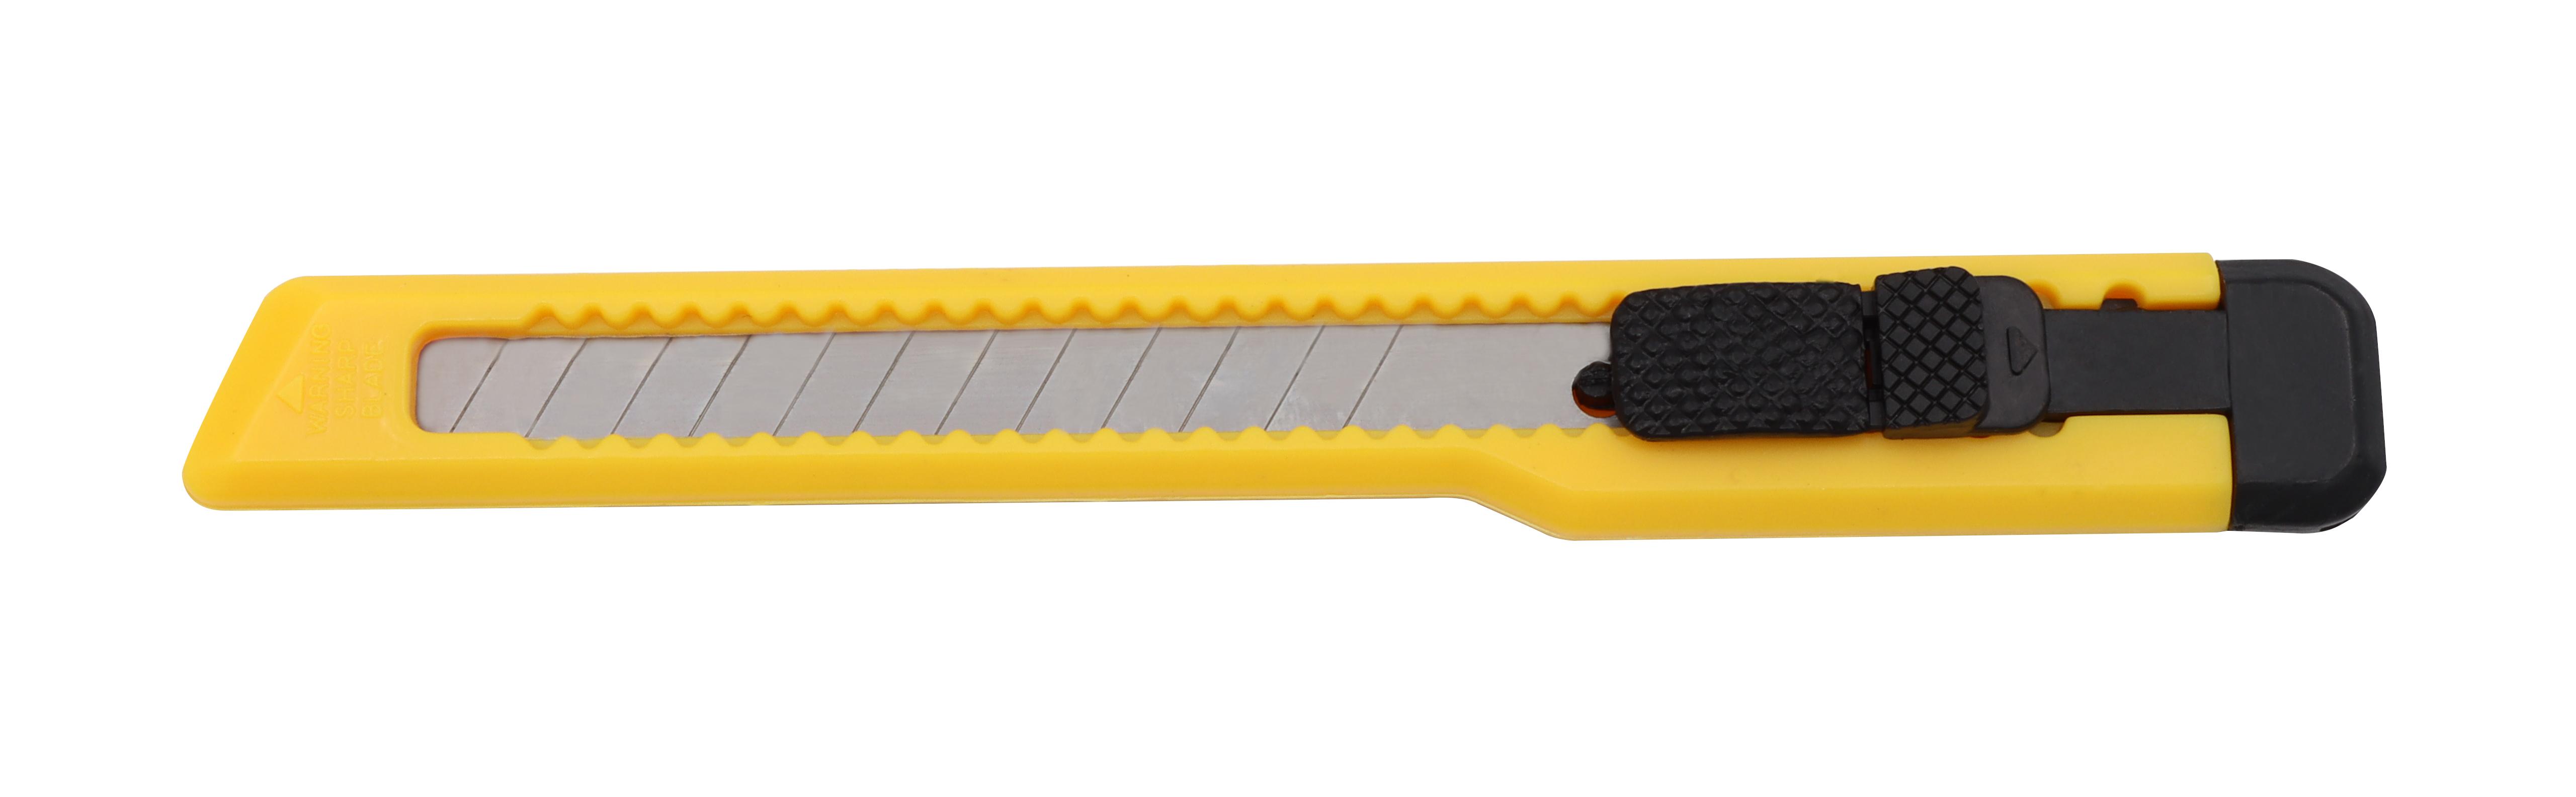 Cuttermesser klein 9 mm x 100 mm | schneiden Cut Messer Klinge ritzen Teppich Paket